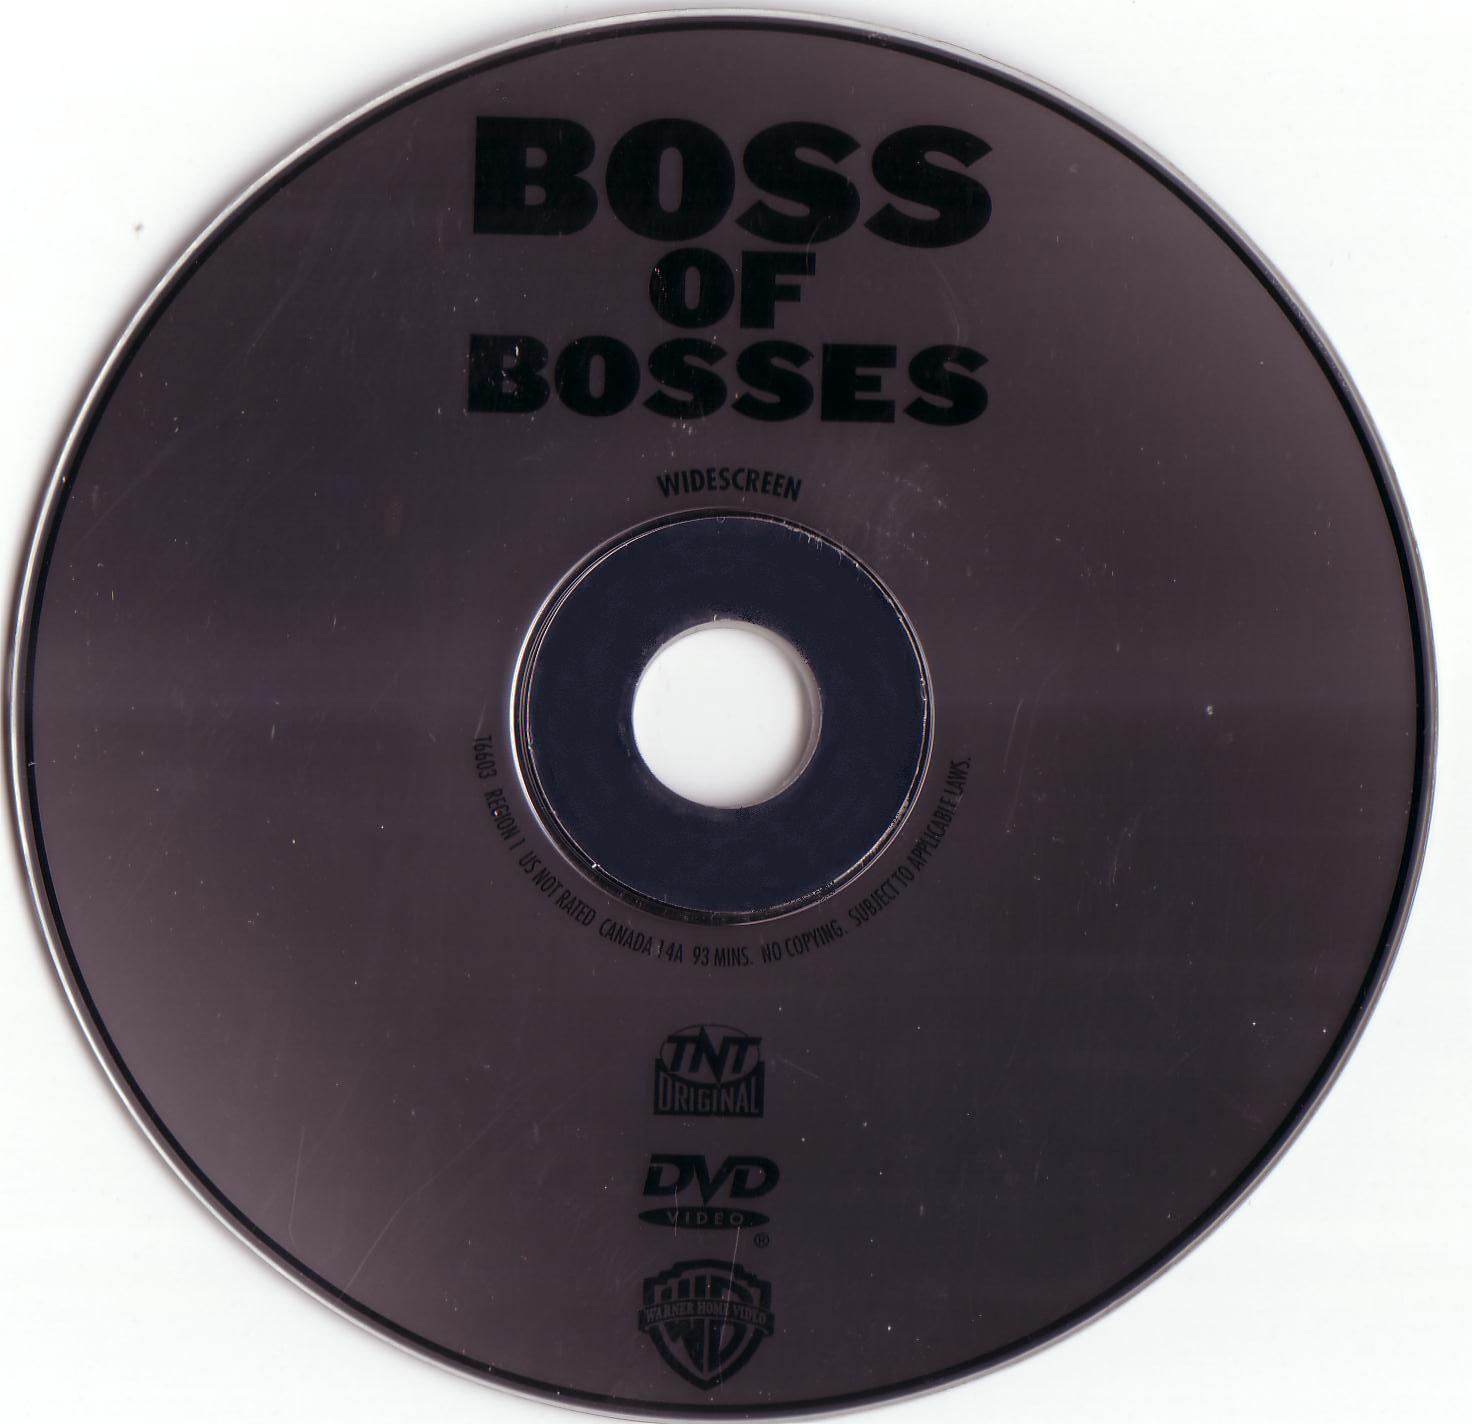 Boss of bosses